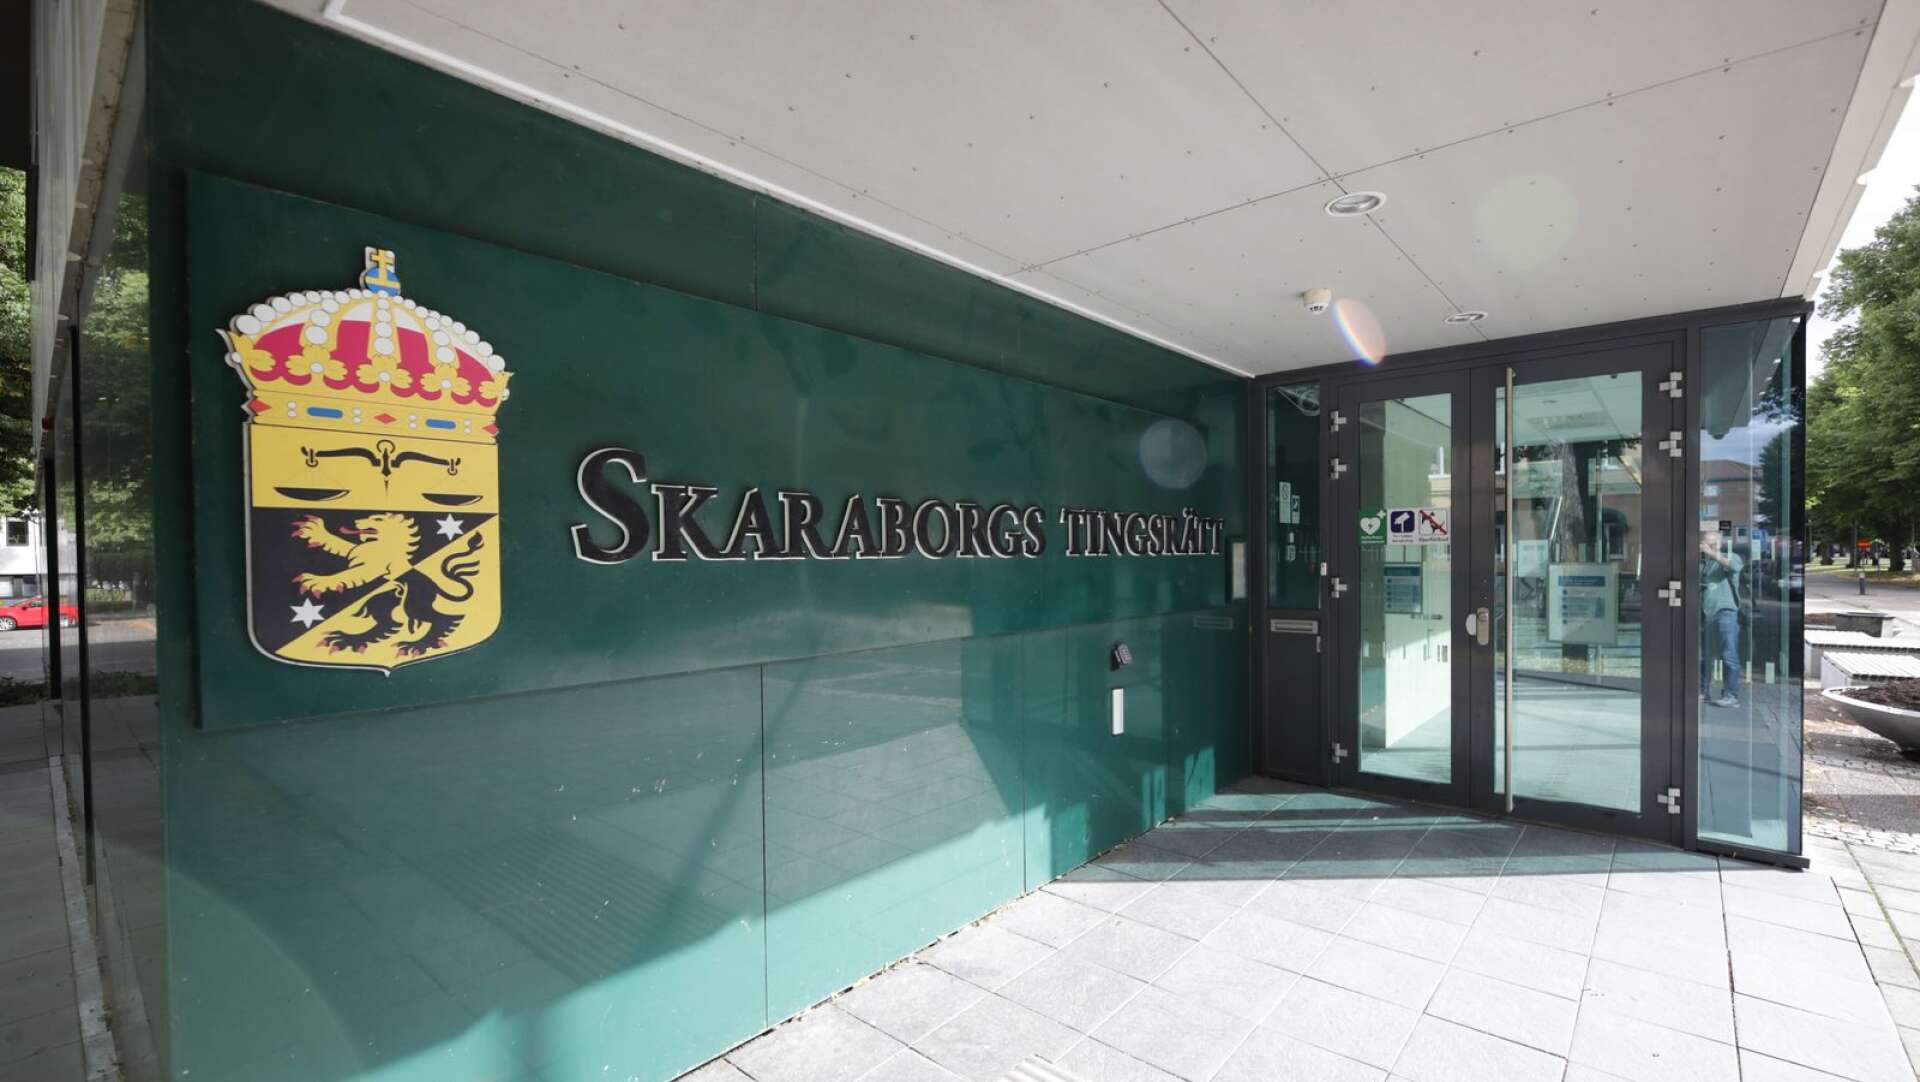 En hyrestvist avseende lokaler i Hjo har avgjorts i Skaraborgs tingsrätt till hyresvärdens fördel. 